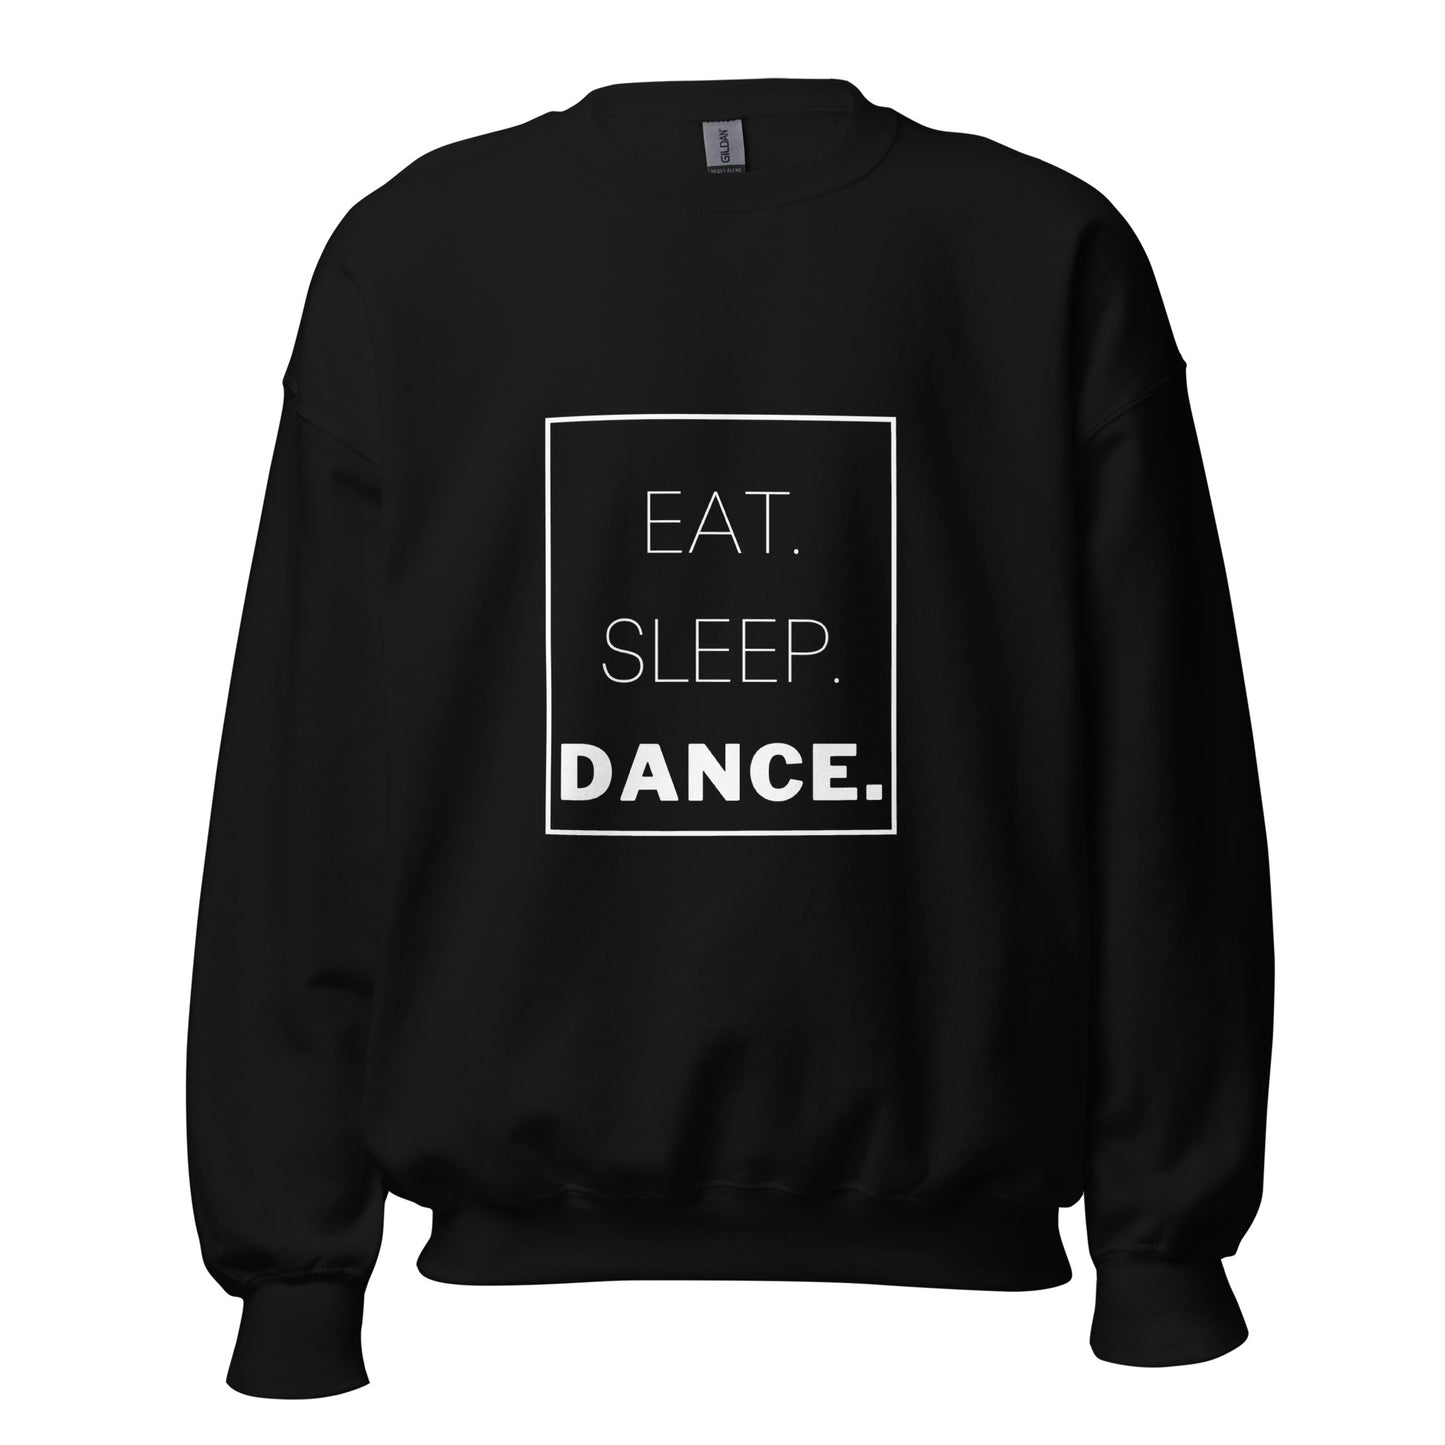 Eat. Sleep. Dance. Unisex Sweatshirt